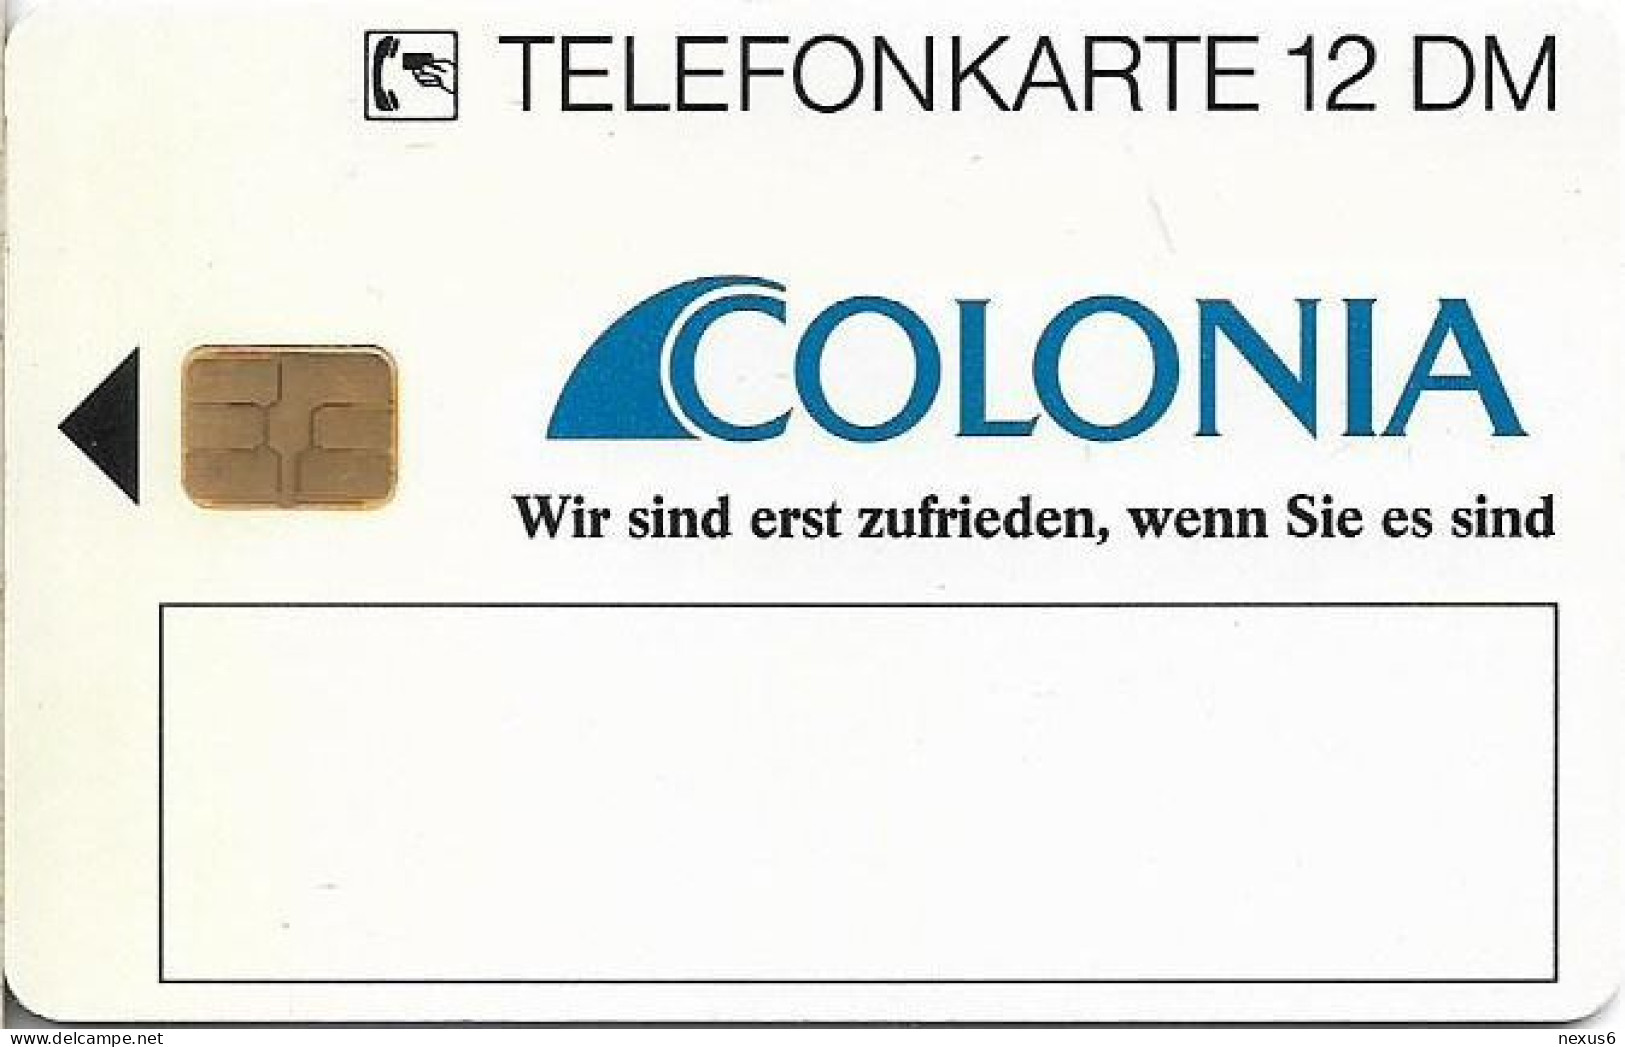 Germany - Colonia Versicherung 2 – Regen - O 0303B - 09.1993, 12DM, 3.000ex, Mint - O-Series : Series Clientes Excluidos Servicio De Colección